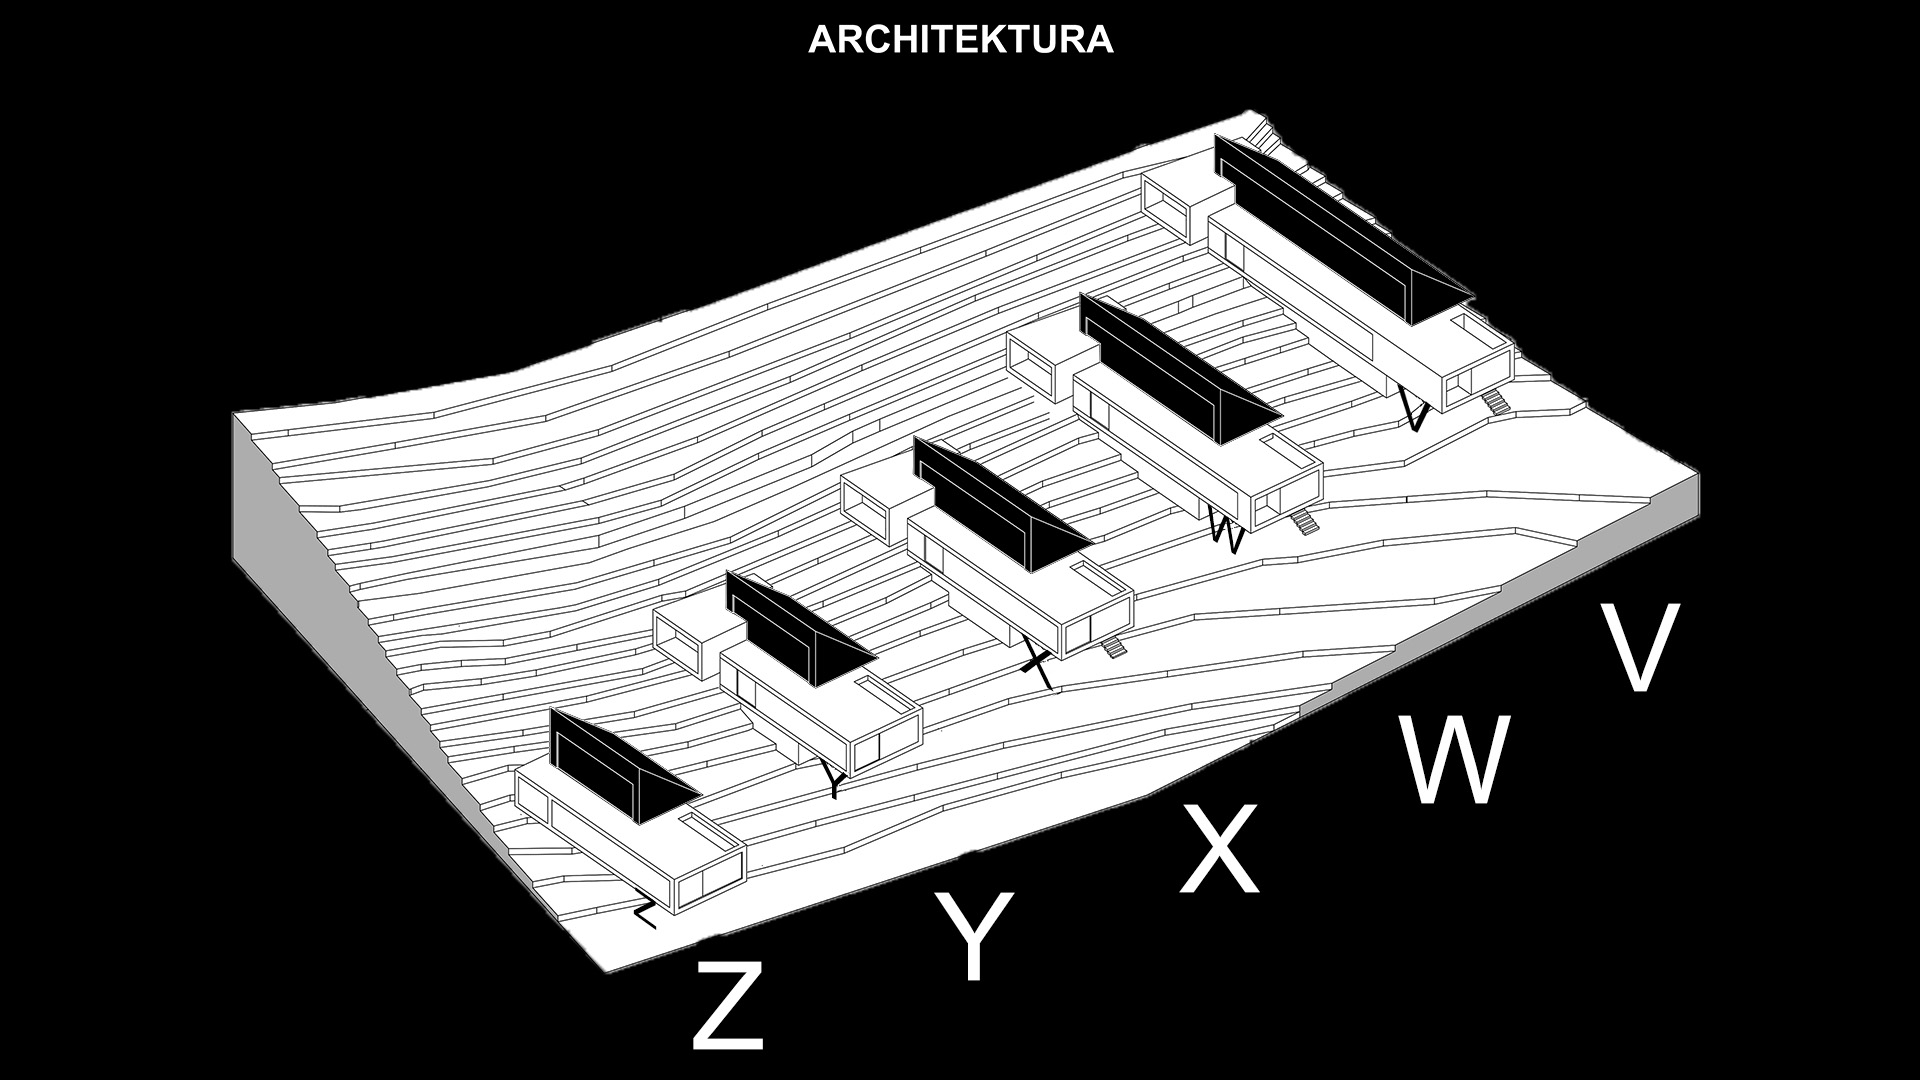 Architektura - Z.Y.X.W.V